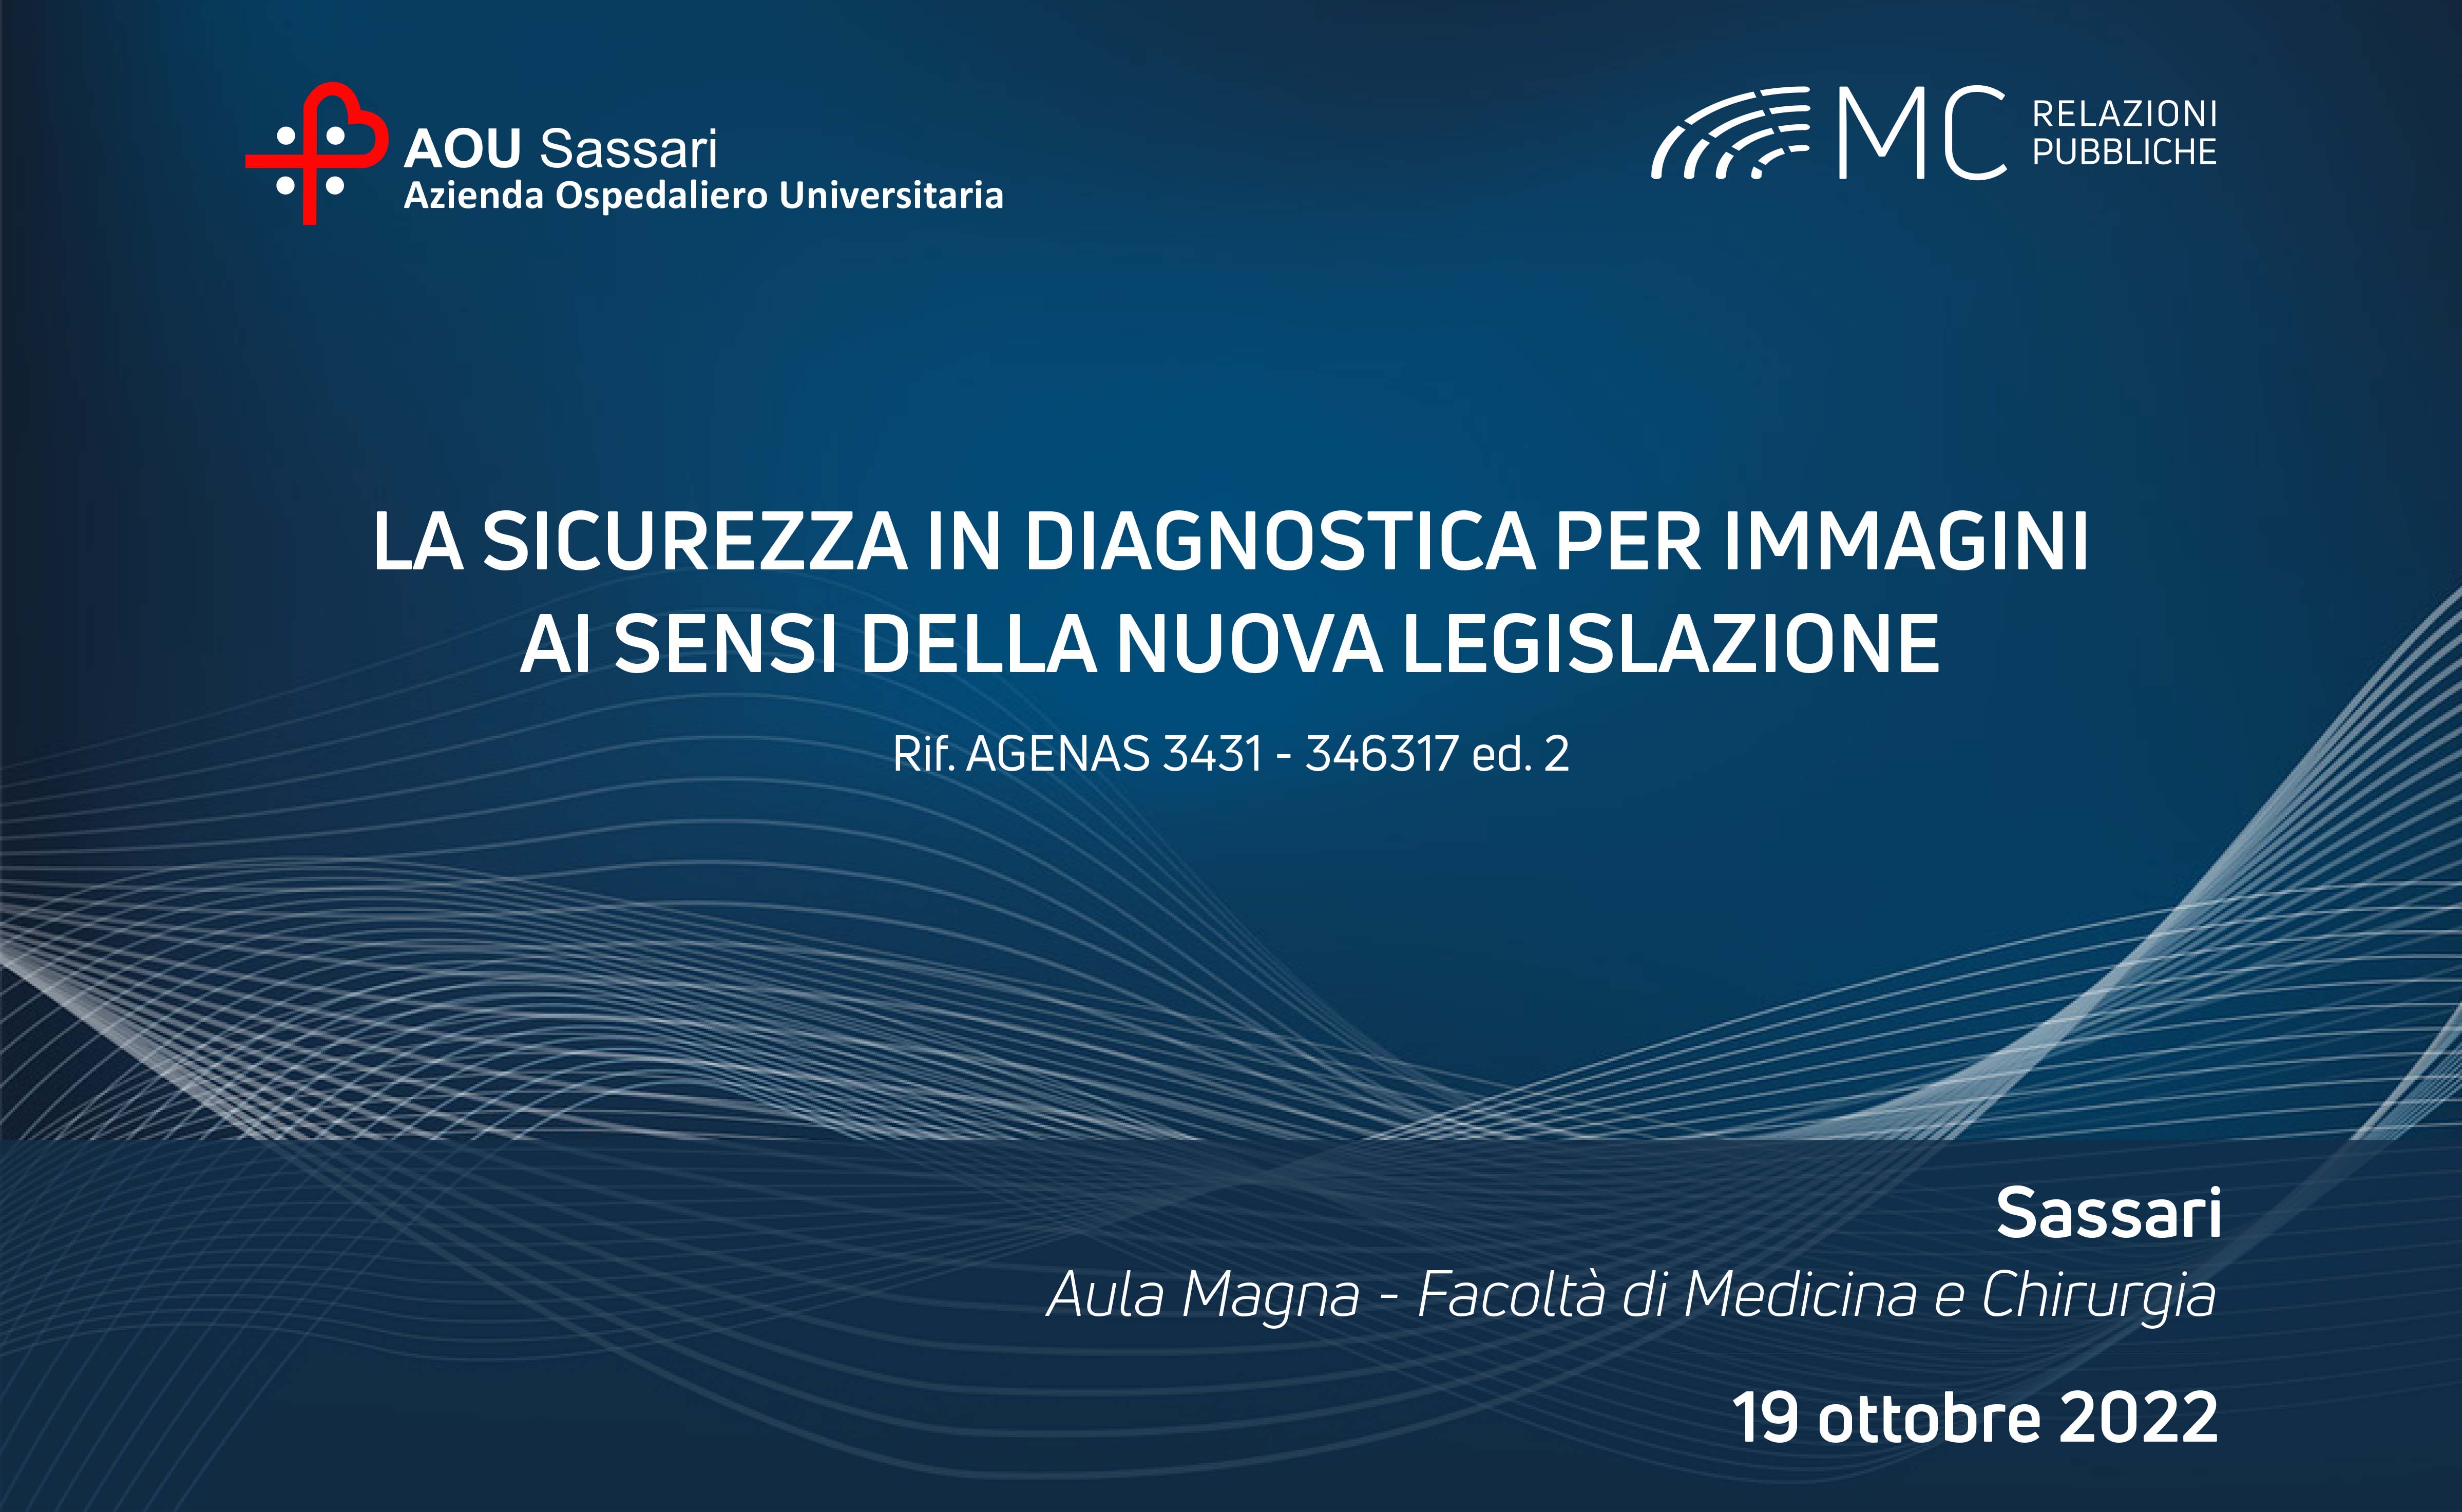 La sicurezza in diagnostica per immagini ai sensi della nuova legislazione. Ed.2 -  19 ottobre 2022